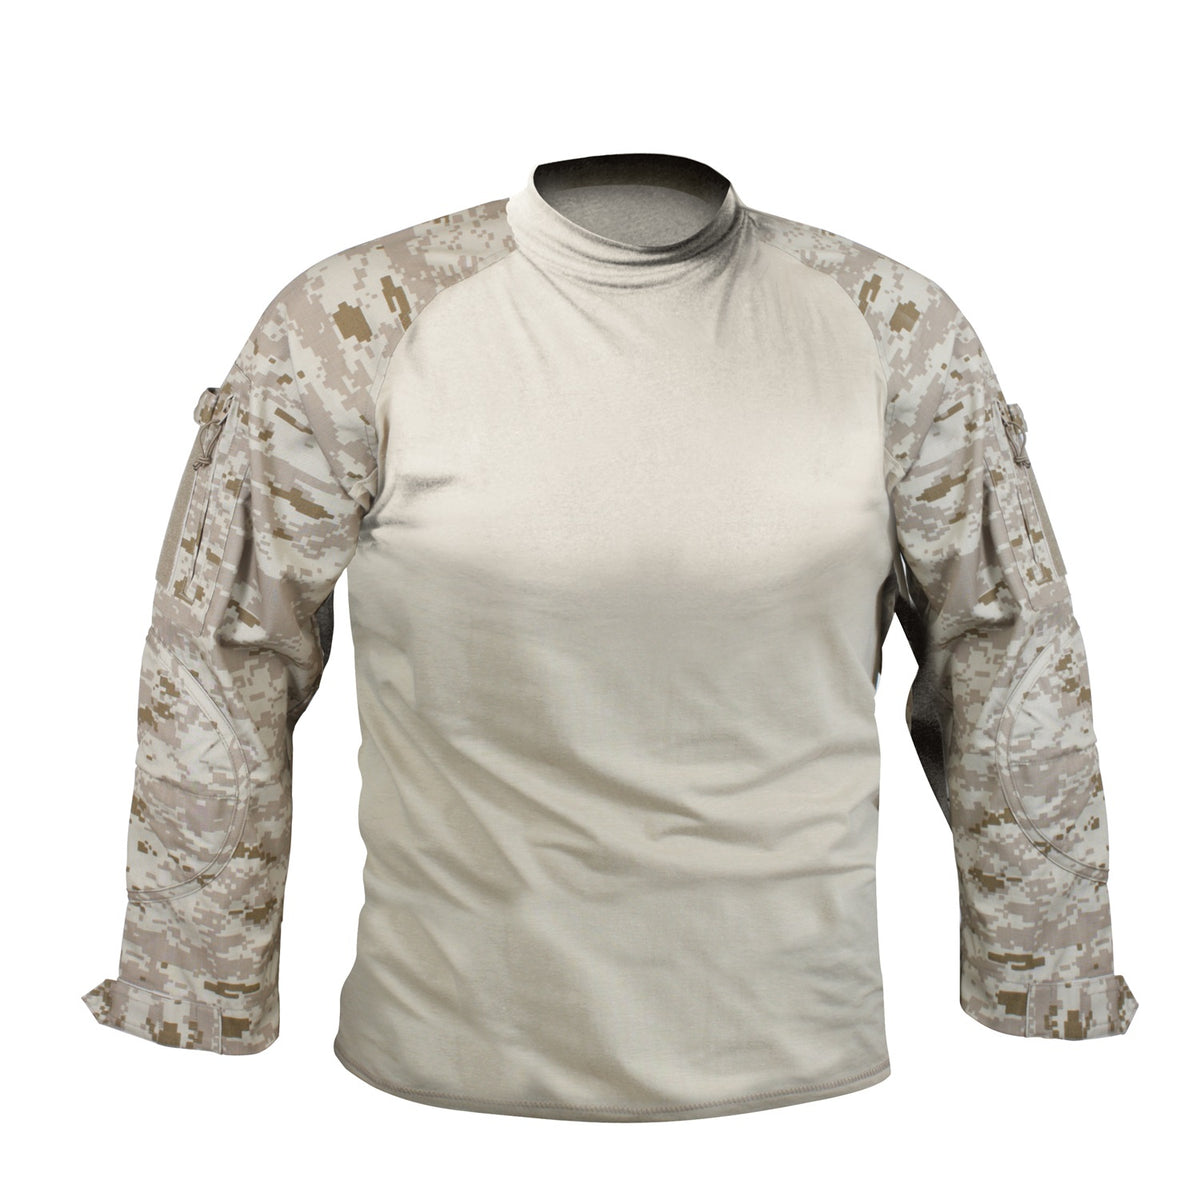 Rothco Military NYCO FR Fire Retardant Combat Shirt Desert Digital Camo